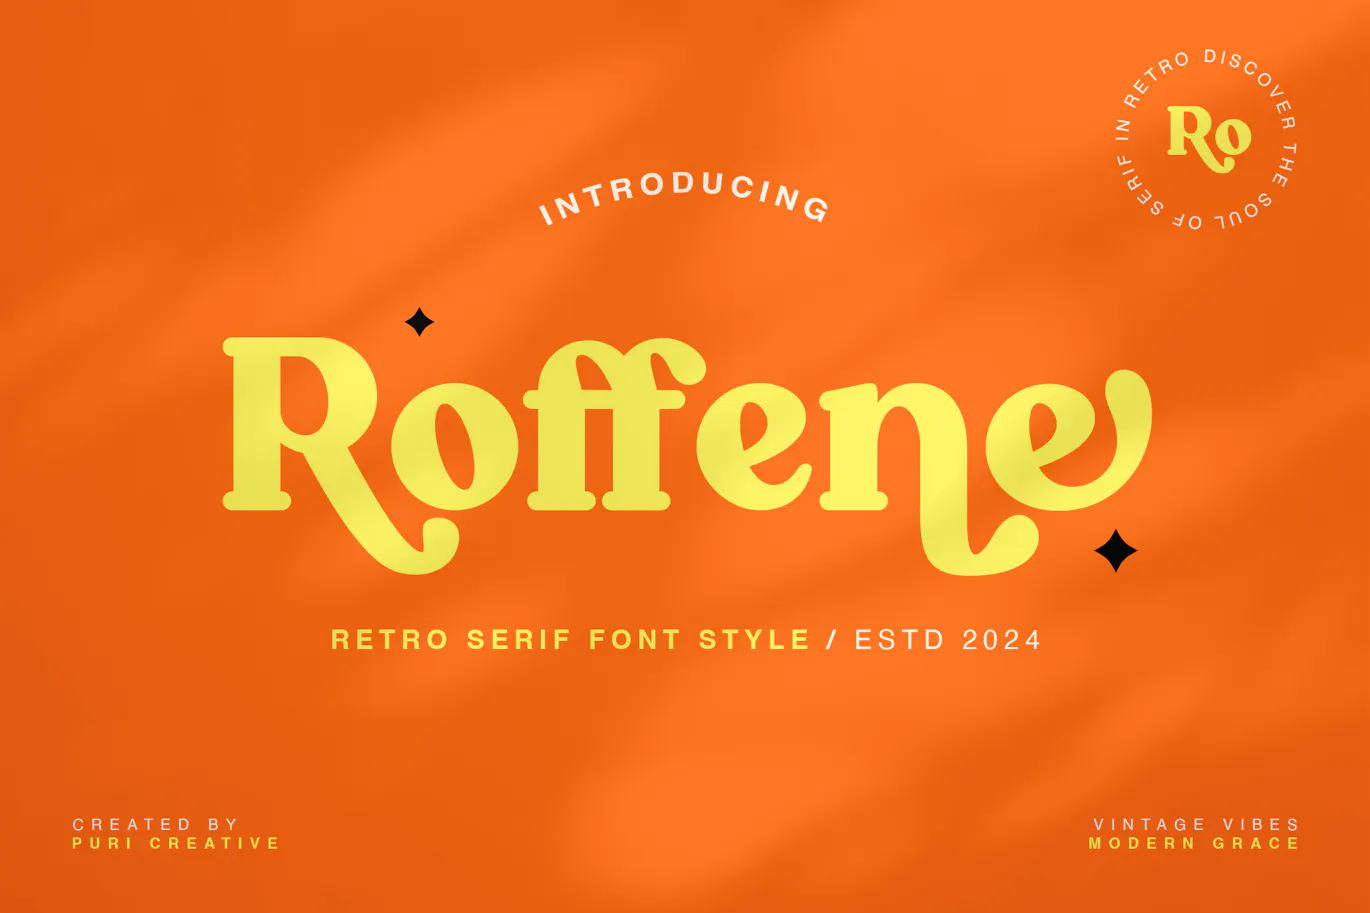 复古风格的英文粗体衬线字体 - Roffene - Retro Serif Style Font